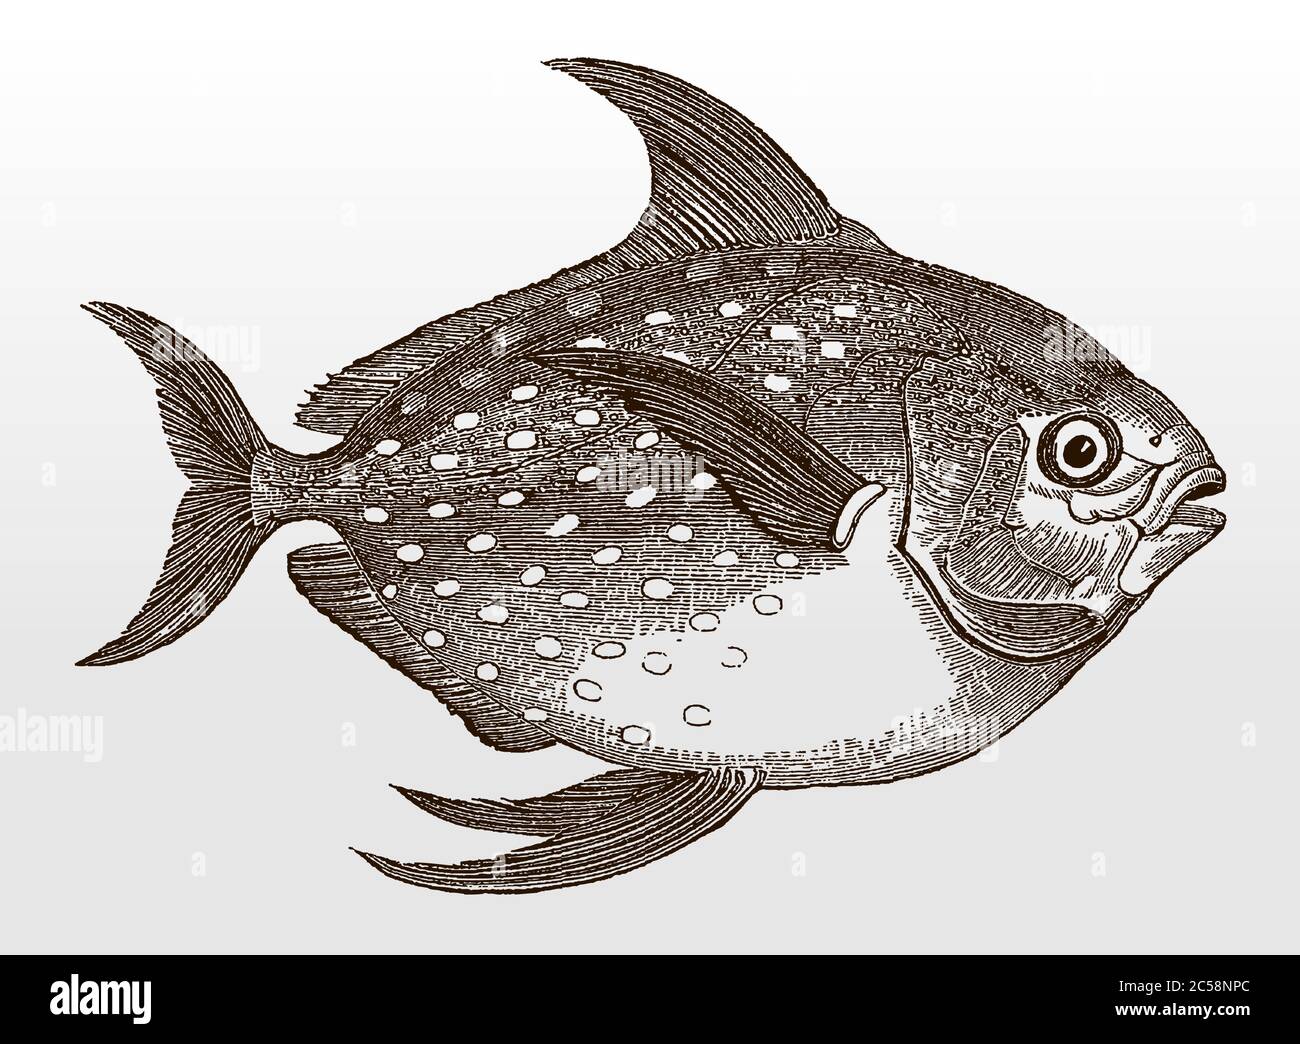 Opah, lampris guttatus, un poisson marin distribué dans le monde entier, en vue latérale après une illustration antique du XIXe siècle Illustration de Vecteur